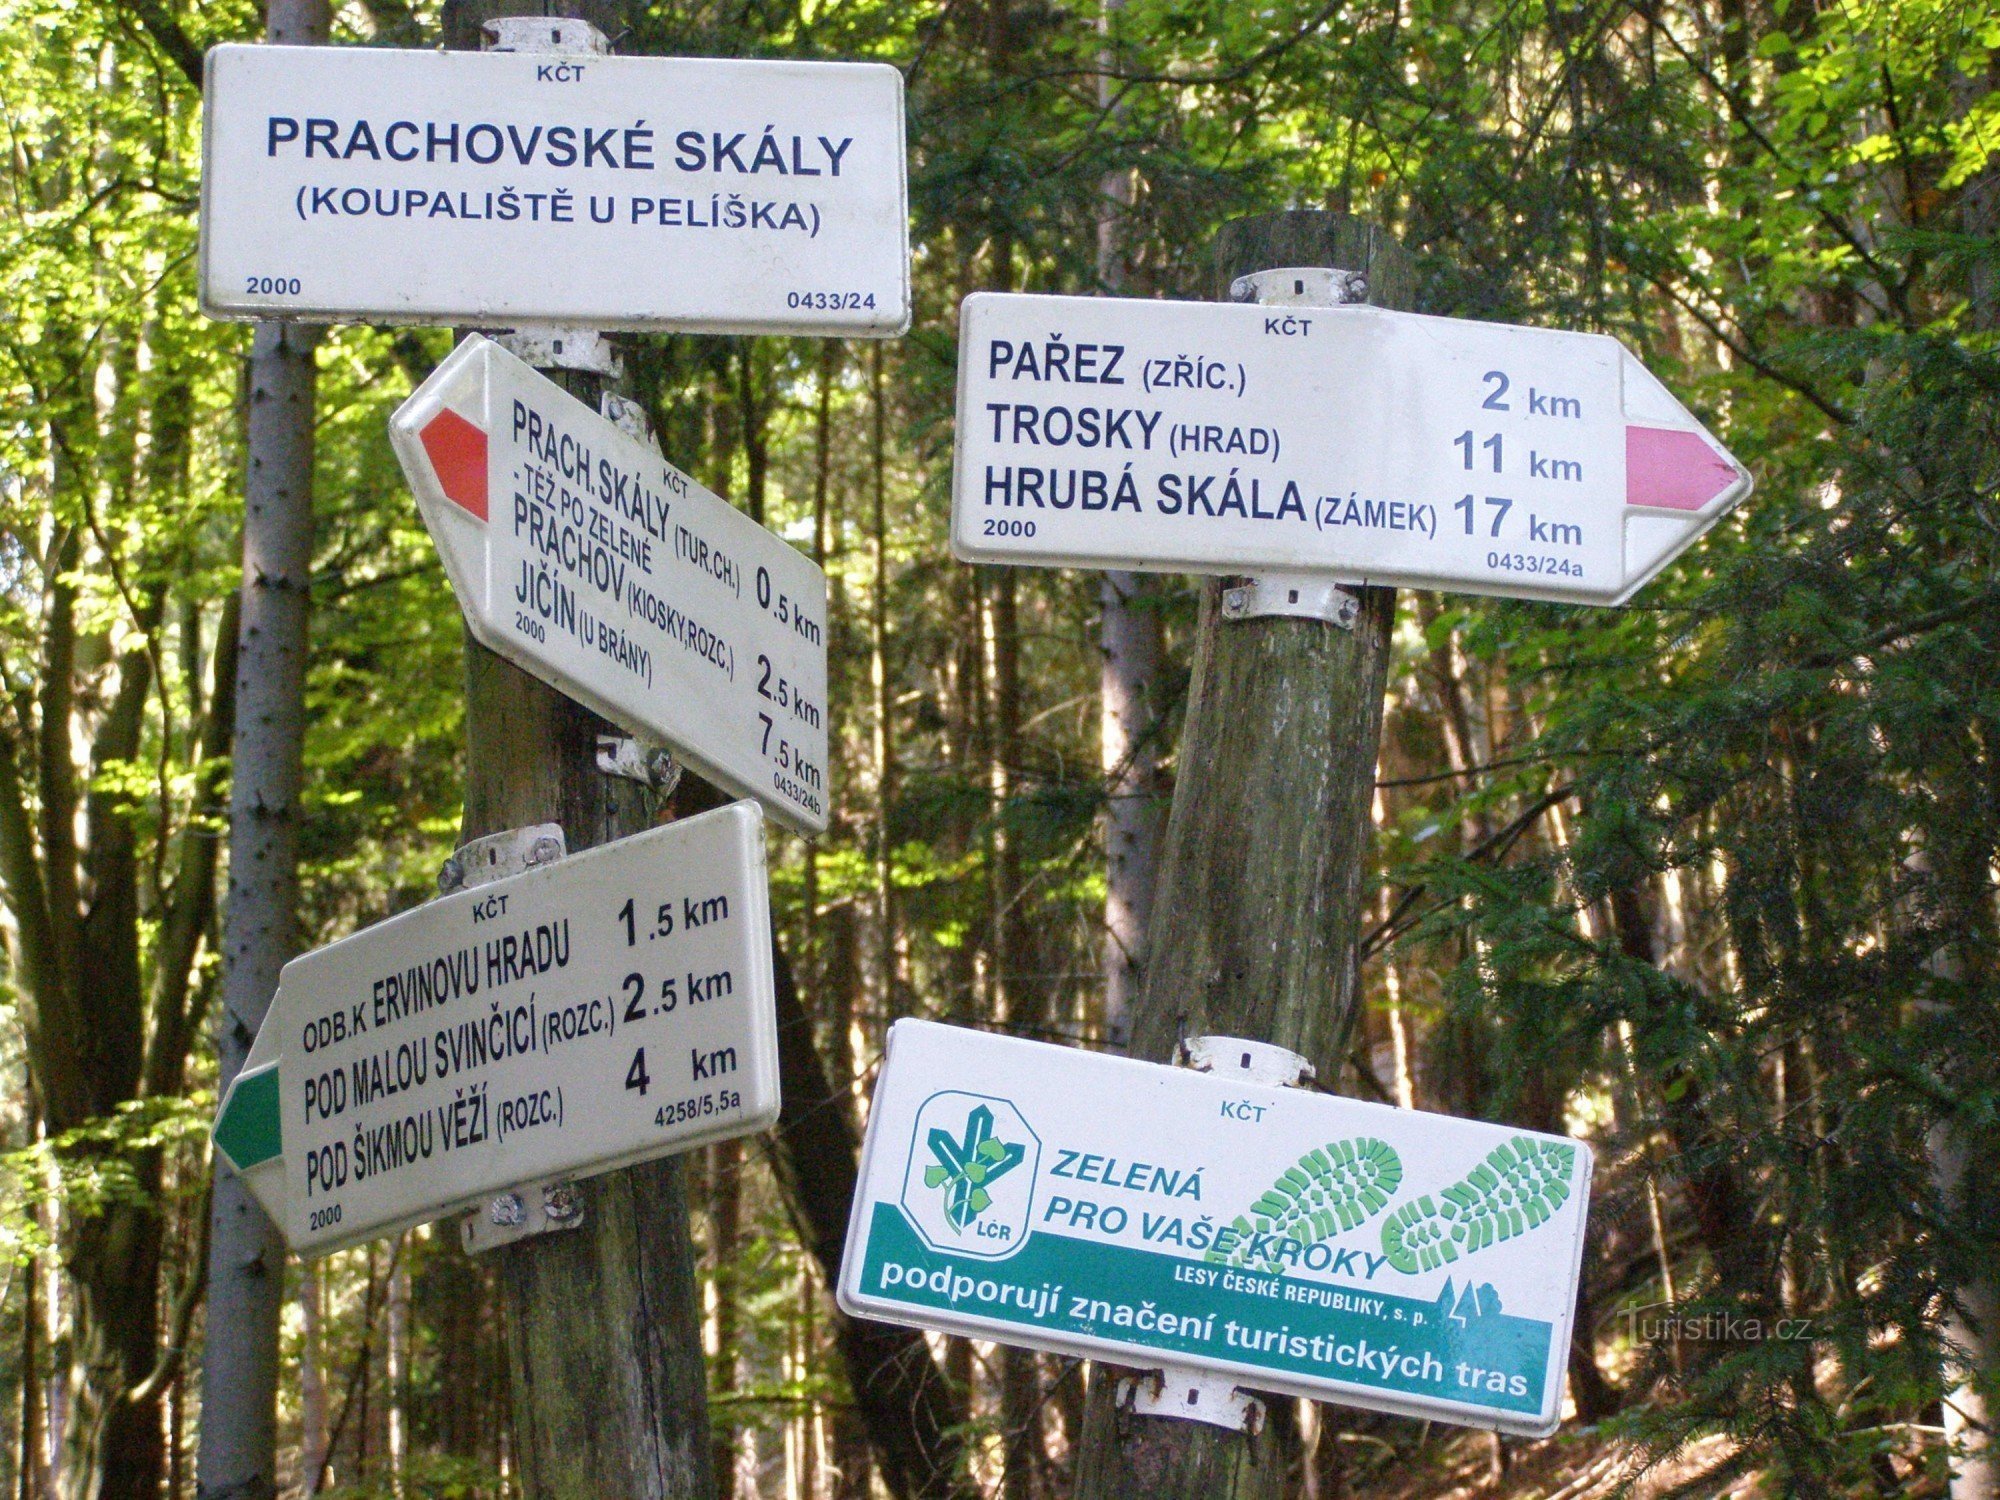 Prachovské skály - turystyczne skrzyżowanie przy kąpielisku U Pelíška